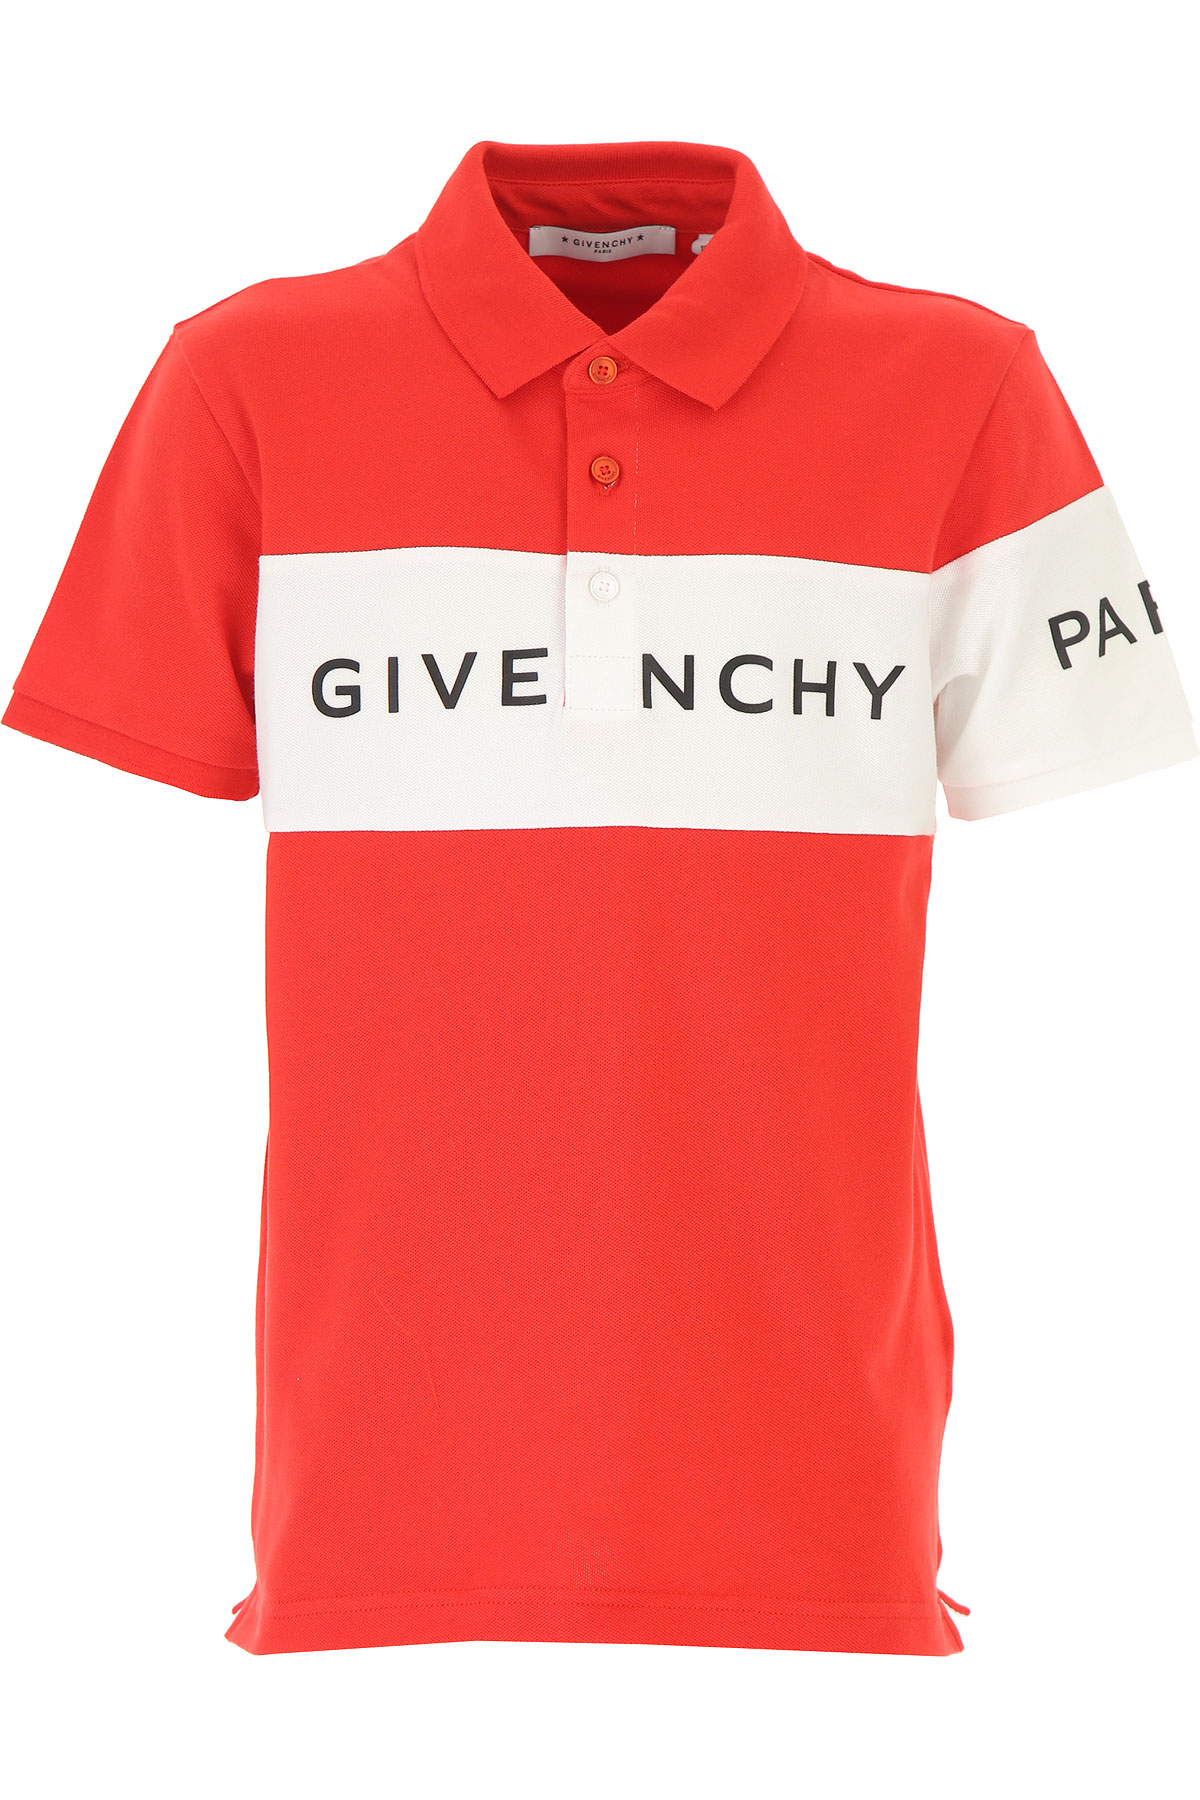 Givenchy Kinder Polohemd für Jungen Günstig im Sale, Rot, Baumwolle, 2017, 10Y 12Y 4Y 5Y 6Y 8Y